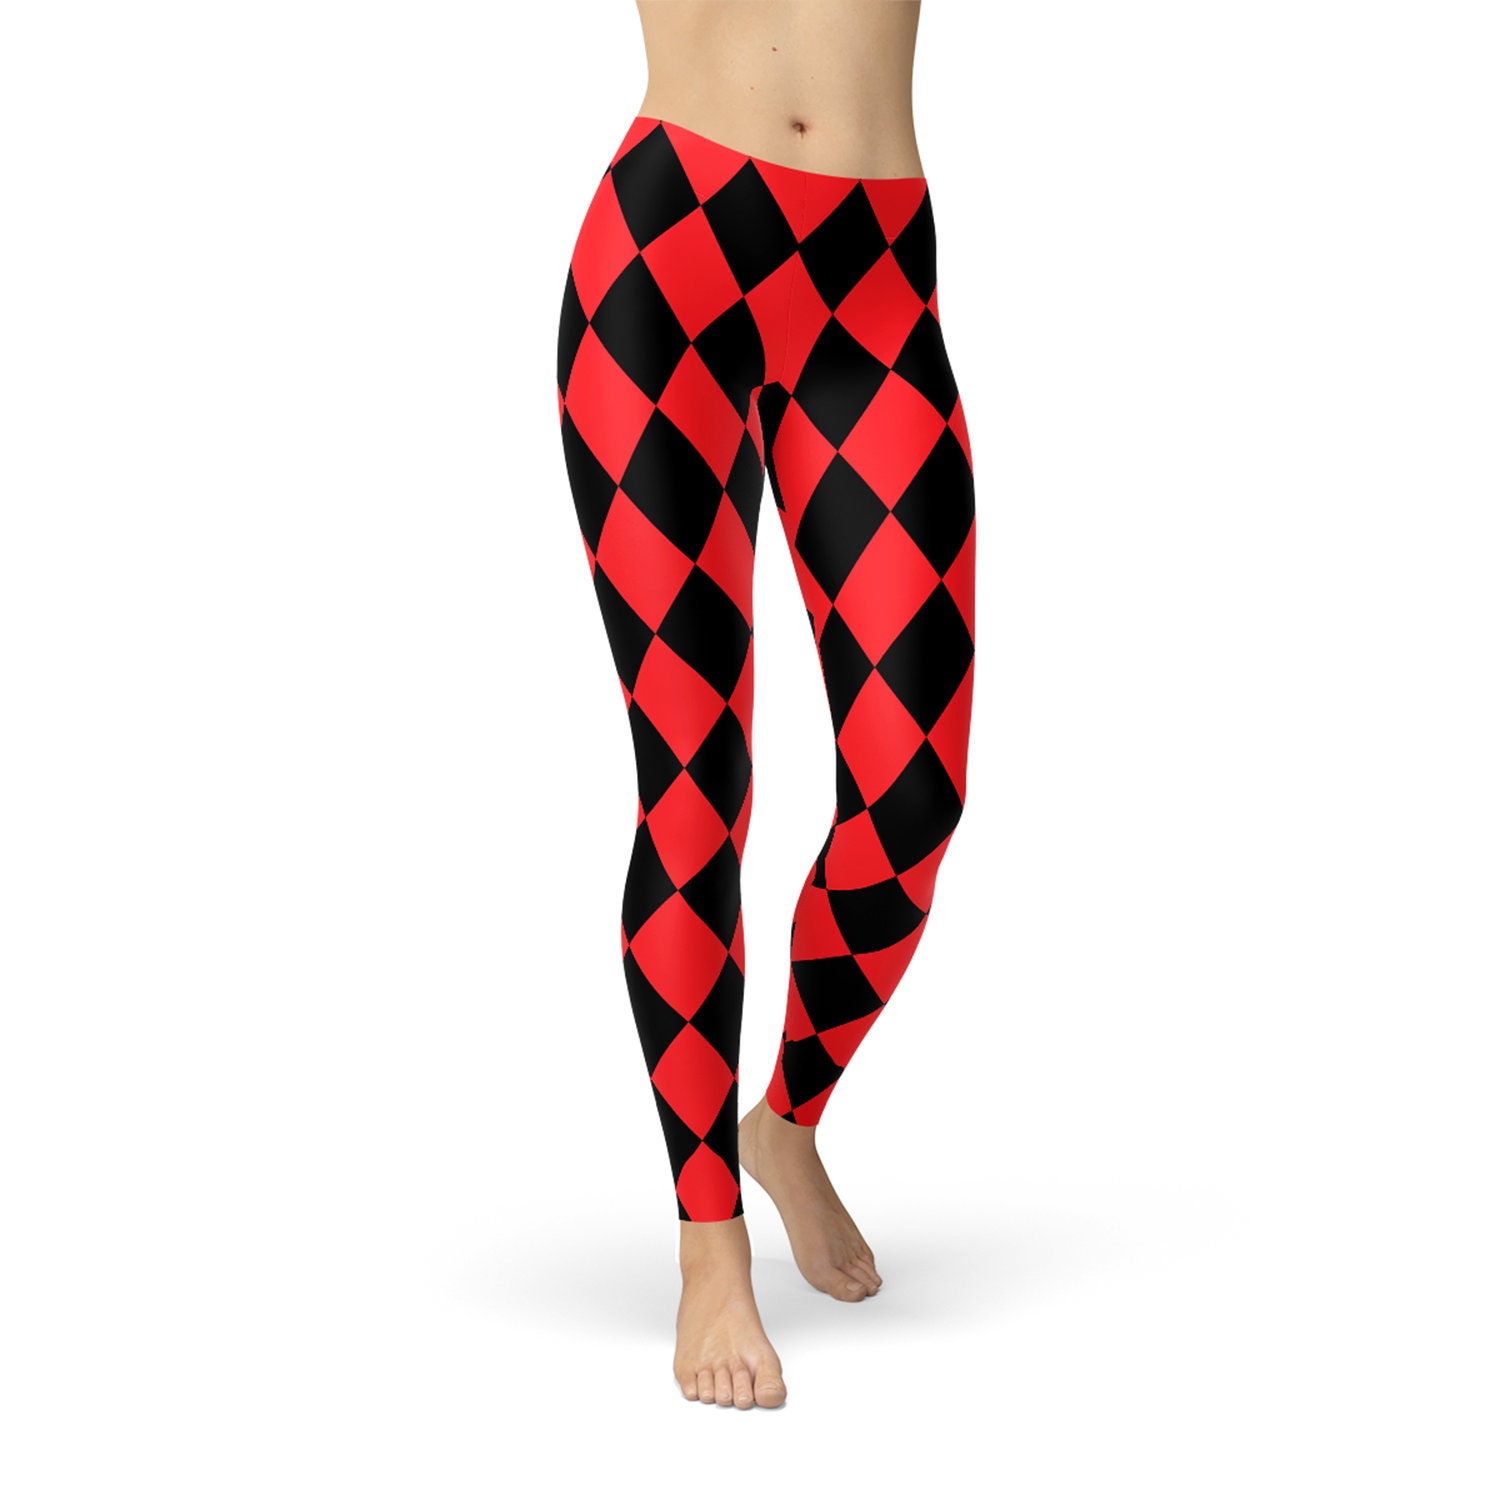 Jester Leggings for Women Inspired Harley Quinn Leggings Red and